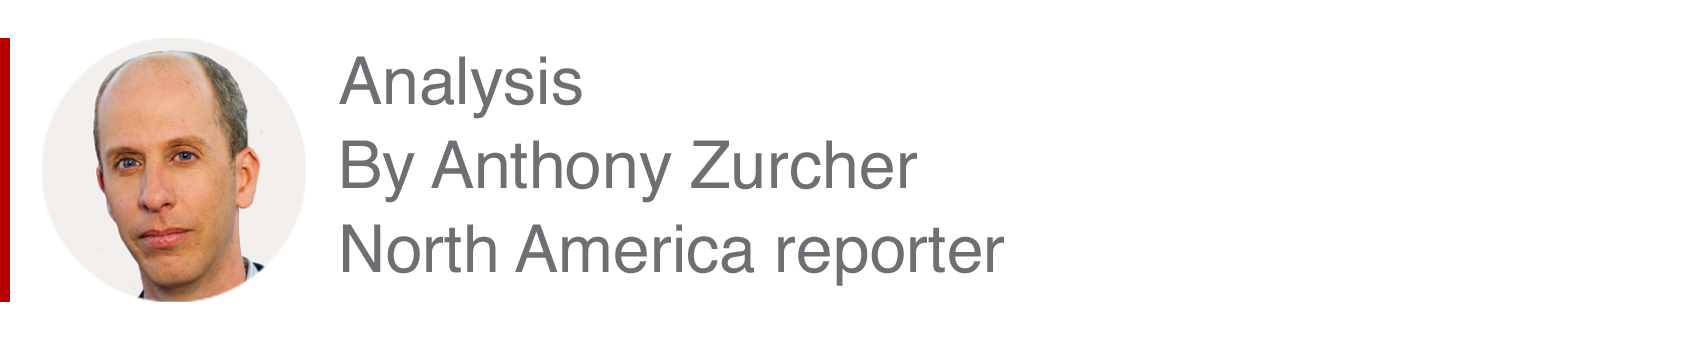 Аналитическая вставка Энтони Зурчера, репортера в Северной Америке